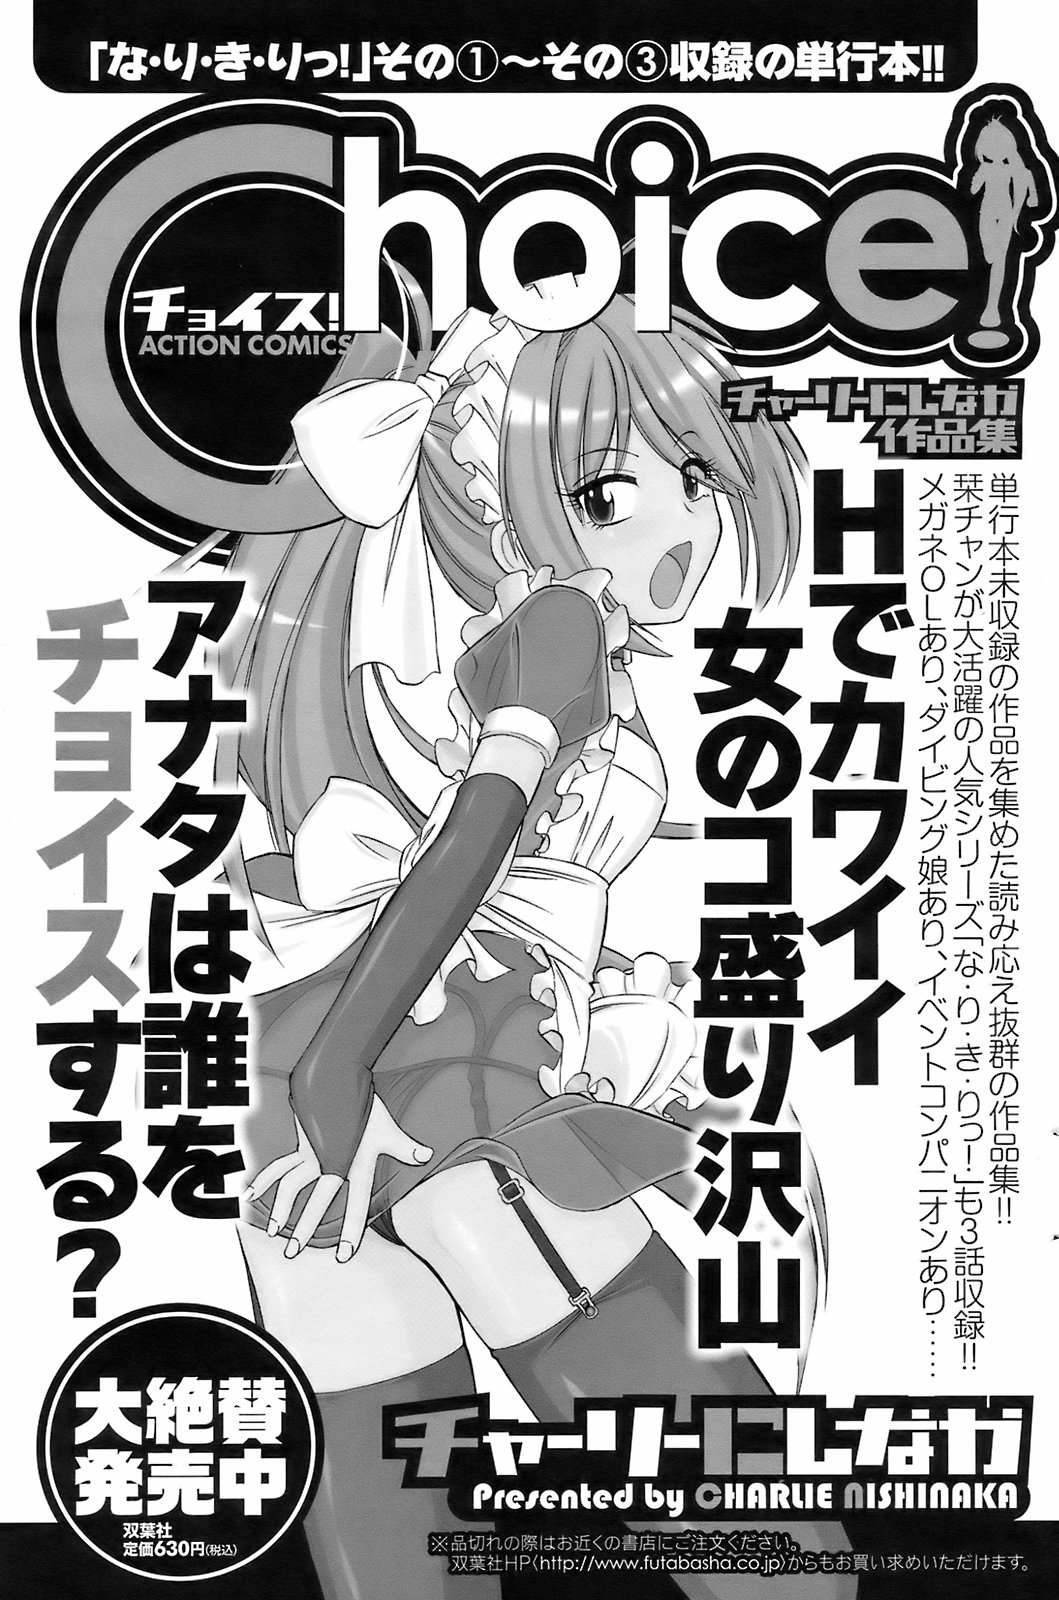 メンズヤングスペシャルIKAZUCHI雷 Vol.7 2008年9月号増刊